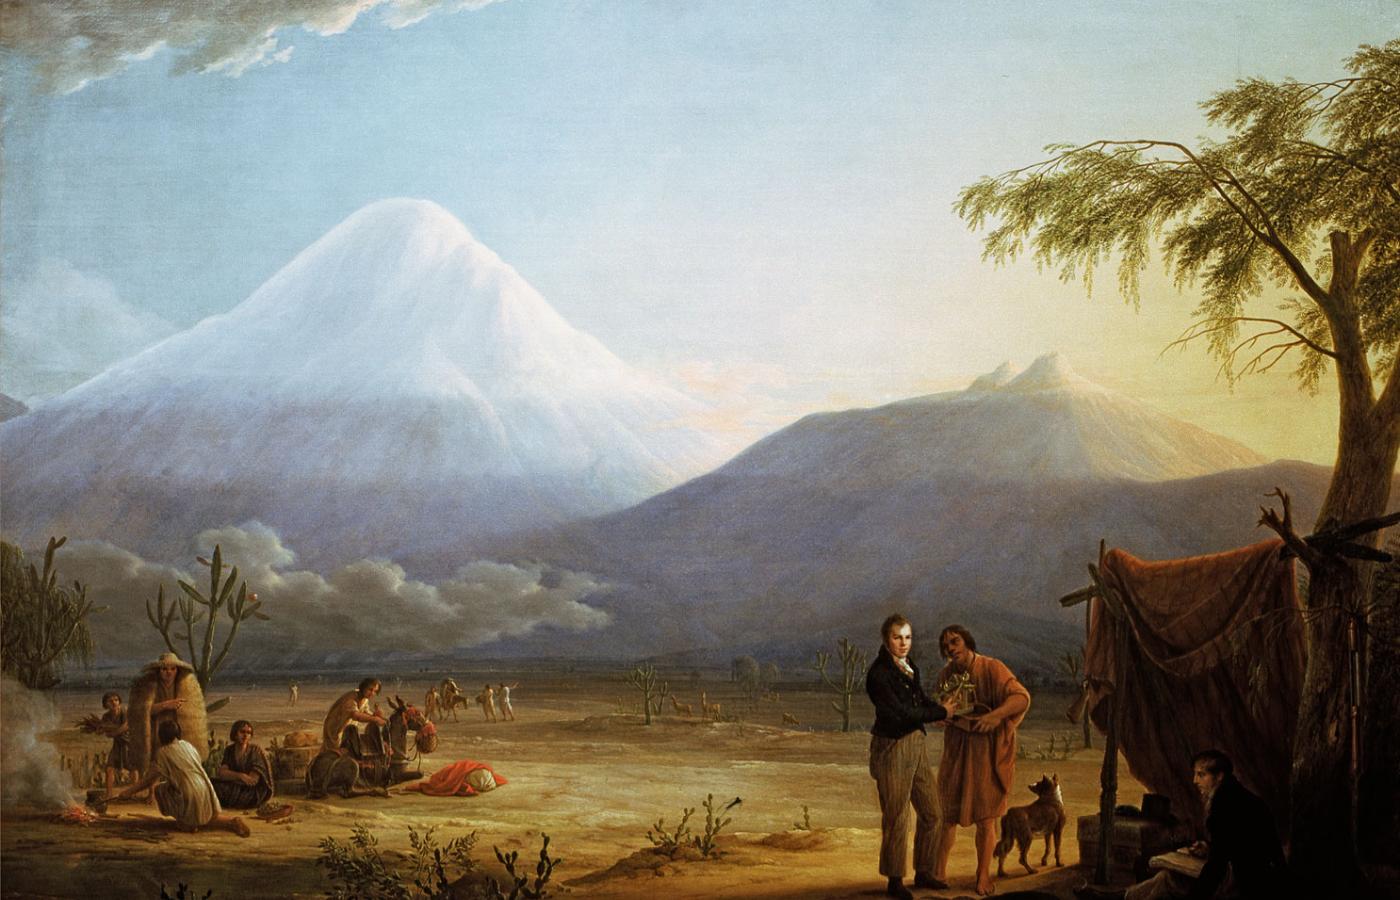 Aleksander von Humboldt, niemiecki przyrodnik, u podnóża wulkanu Chimborazo w 1802 r., obraz Friedricha Georga Weitscha, XIX w.